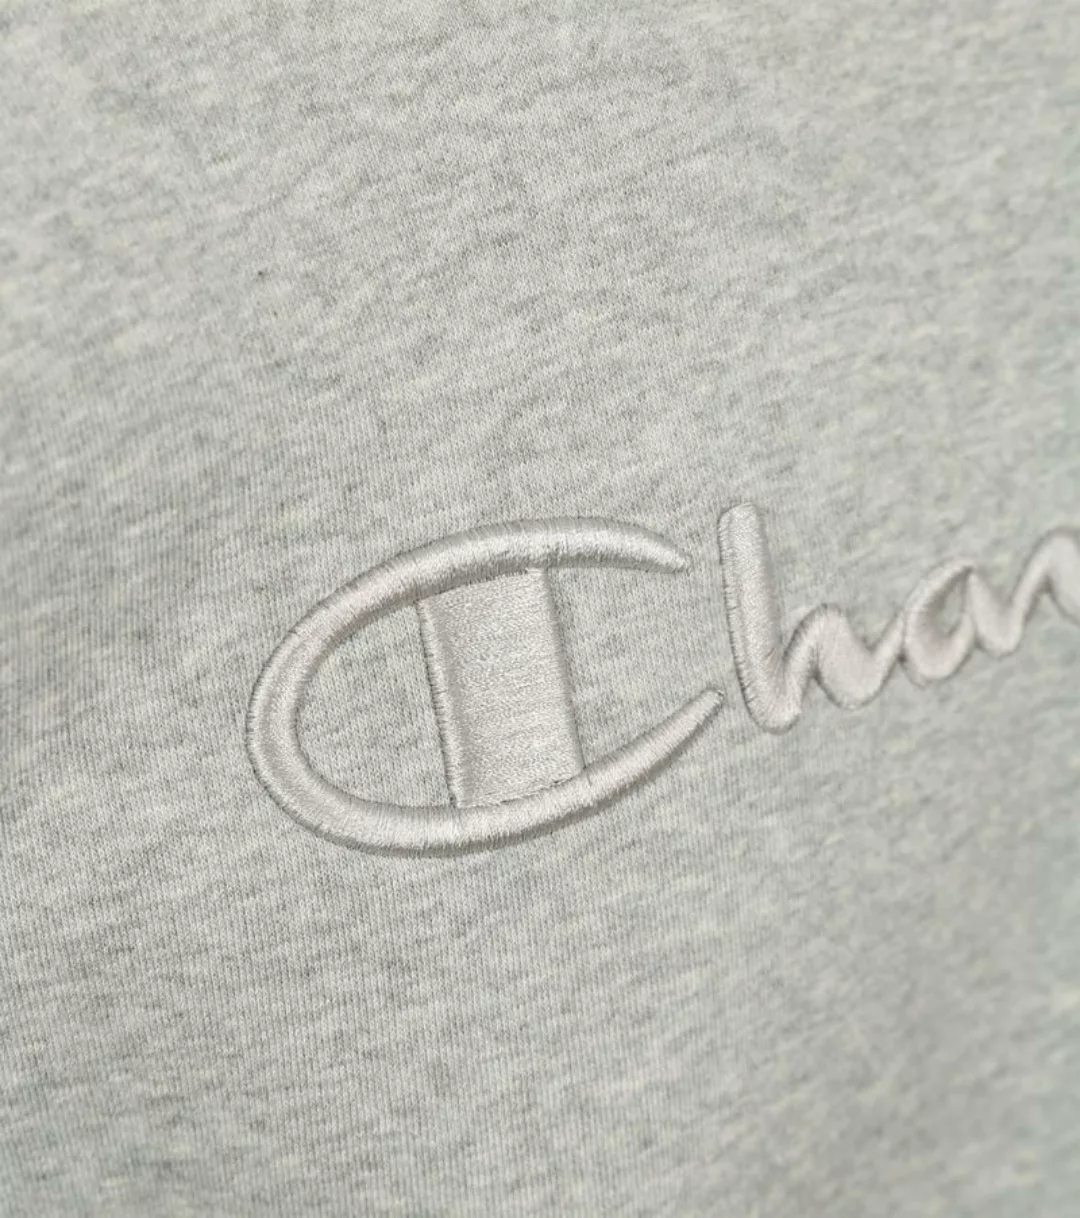 Champion Sweater mit Logo Hellgrau - Größe M günstig online kaufen